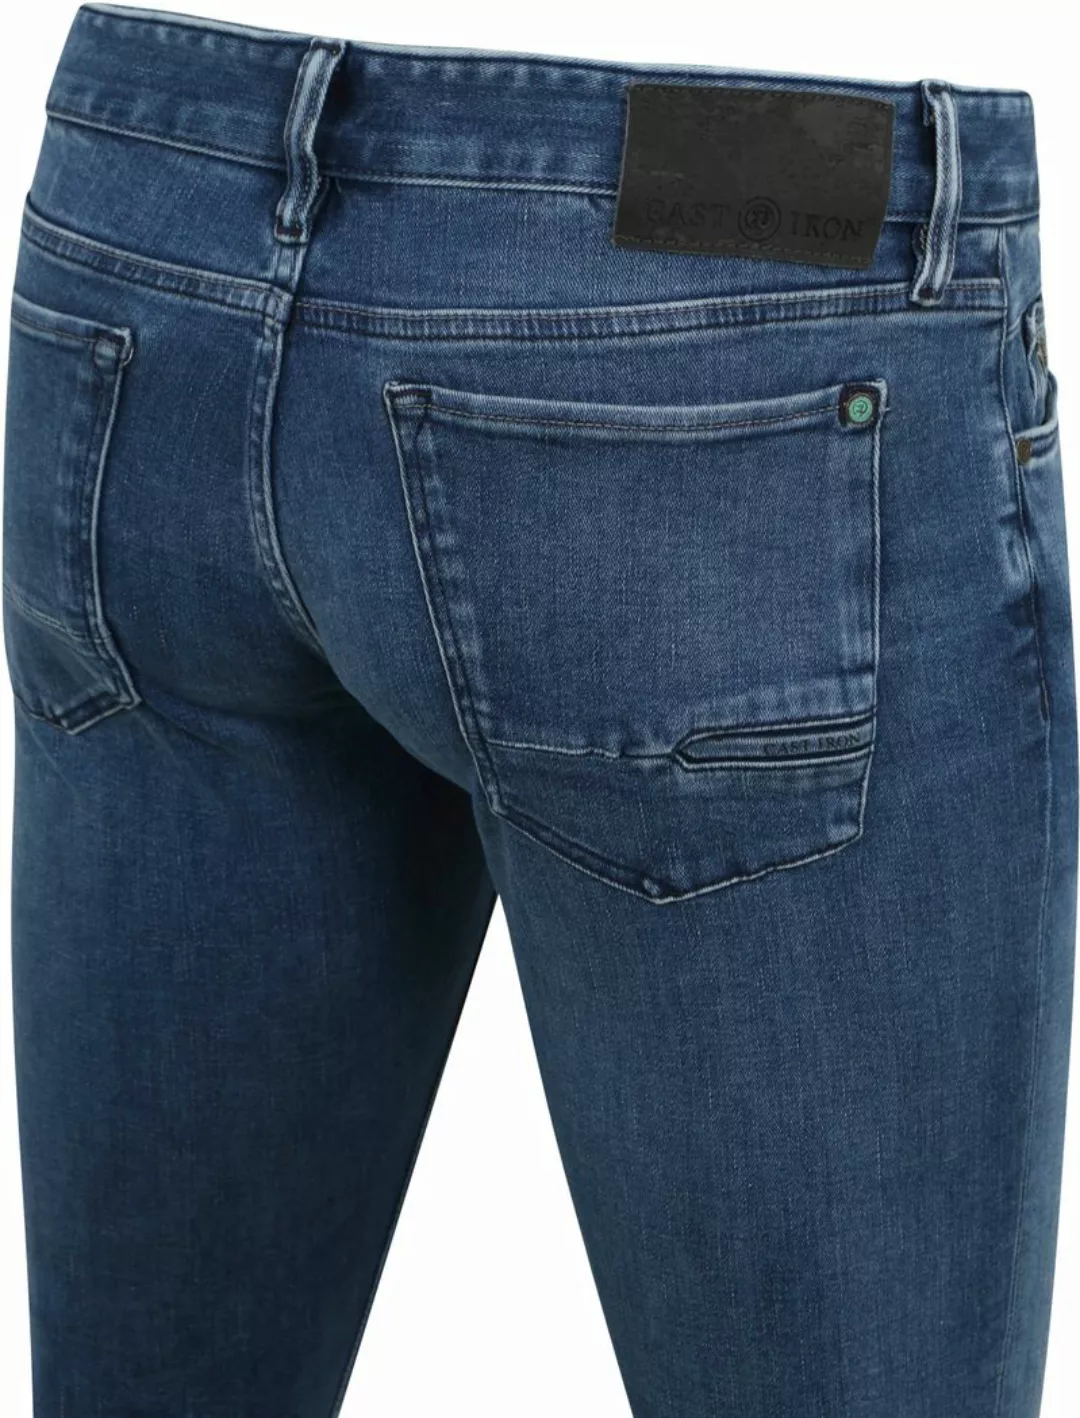 Cast Iron Riser Jeans Blau IIW - Größe W 32 - L 34 günstig online kaufen